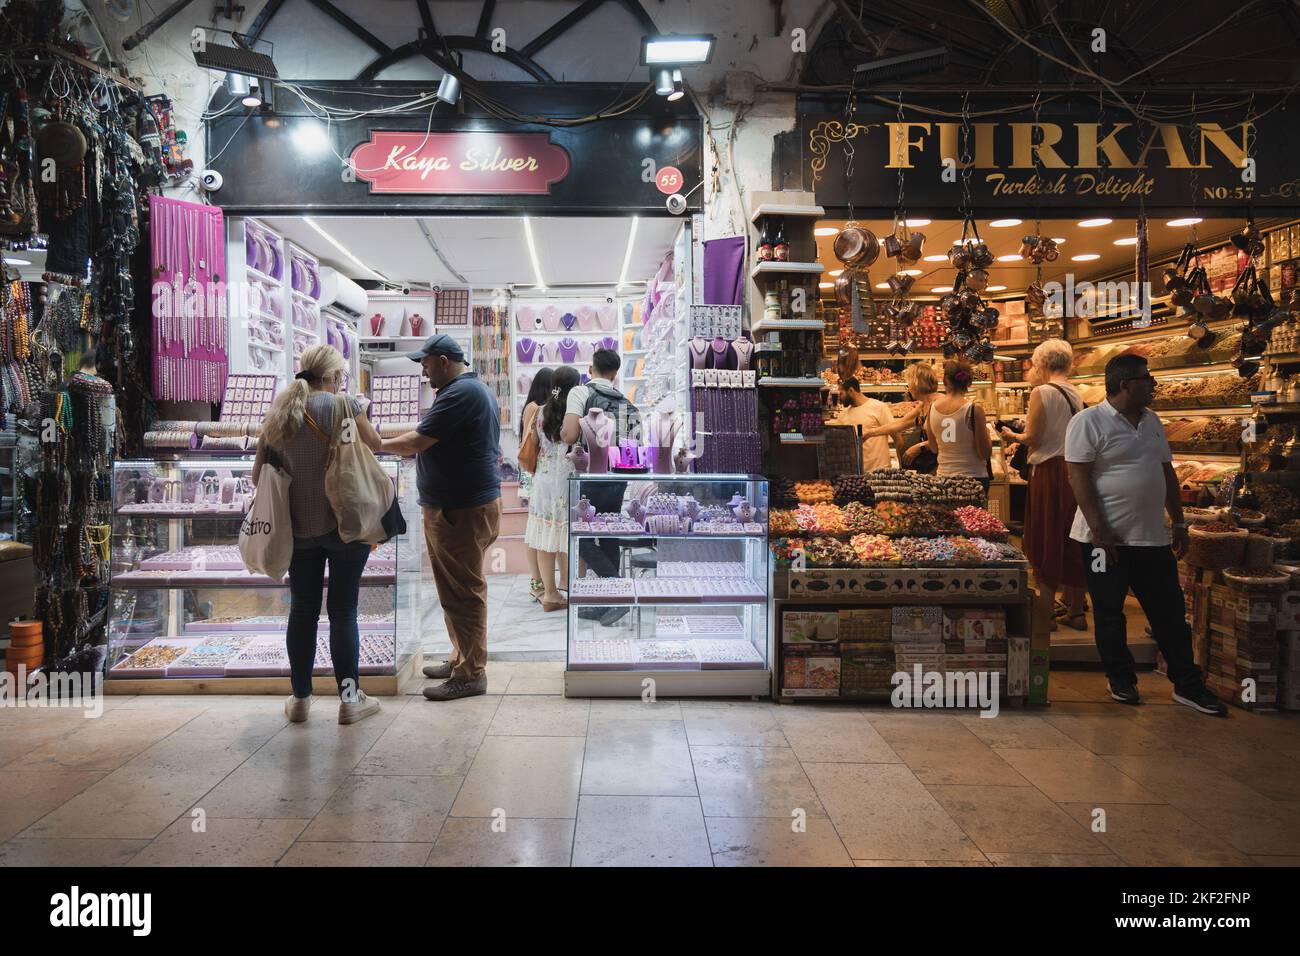 Istanbul, Turchia - 1 2022 ottobre: Acquirenti e venditori all'esterno di un negozio di dolci e gioielleria al famoso mercato Grand Bazaar di Istanbul, T. Foto Stock